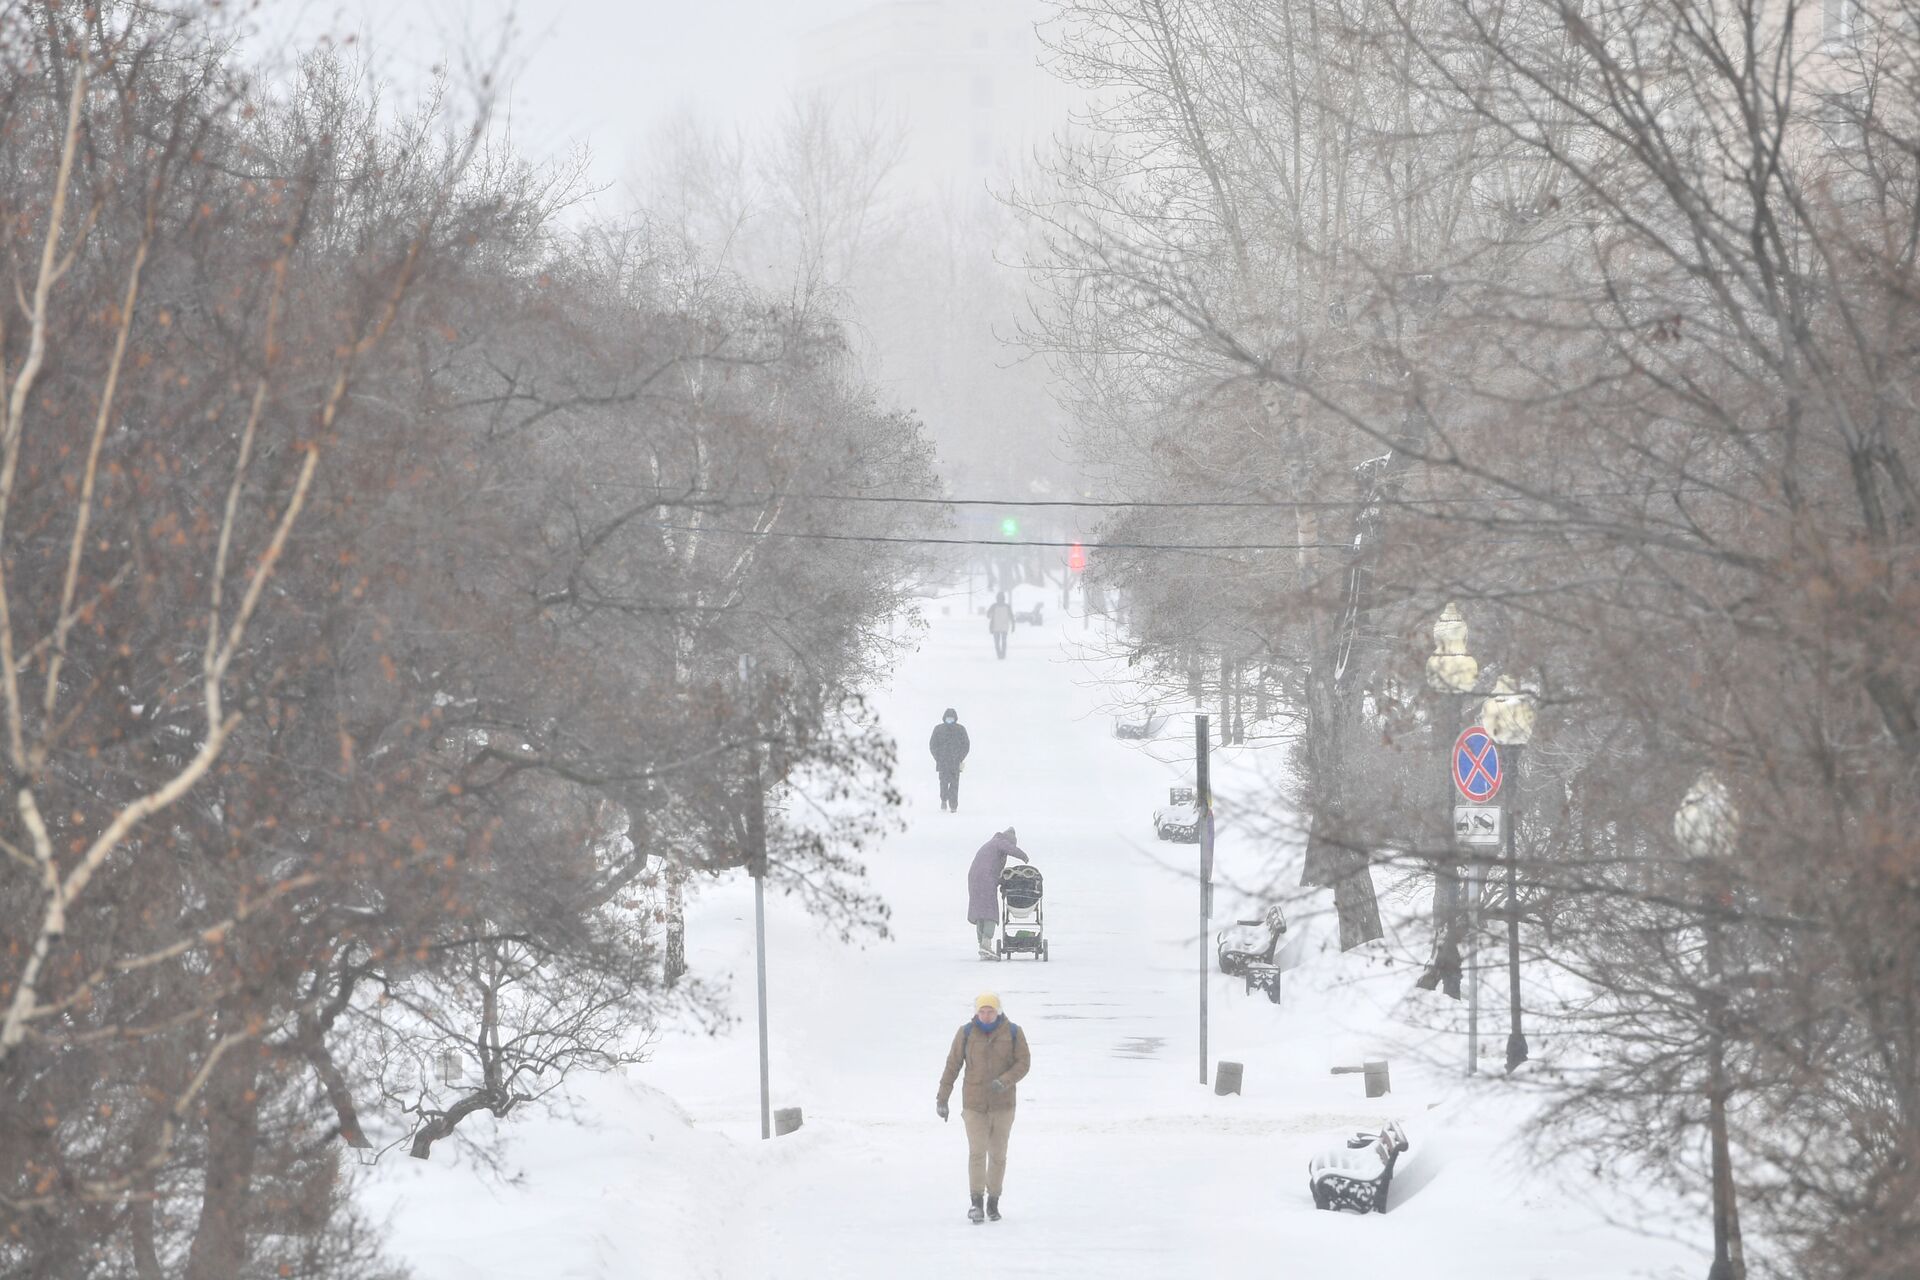 Snežna mećava u Moskvi, 60.000 komunalaca pokušava da spreči kolaps grada /foto/ - Sputnik Srbija, 1920, 12.02.2021